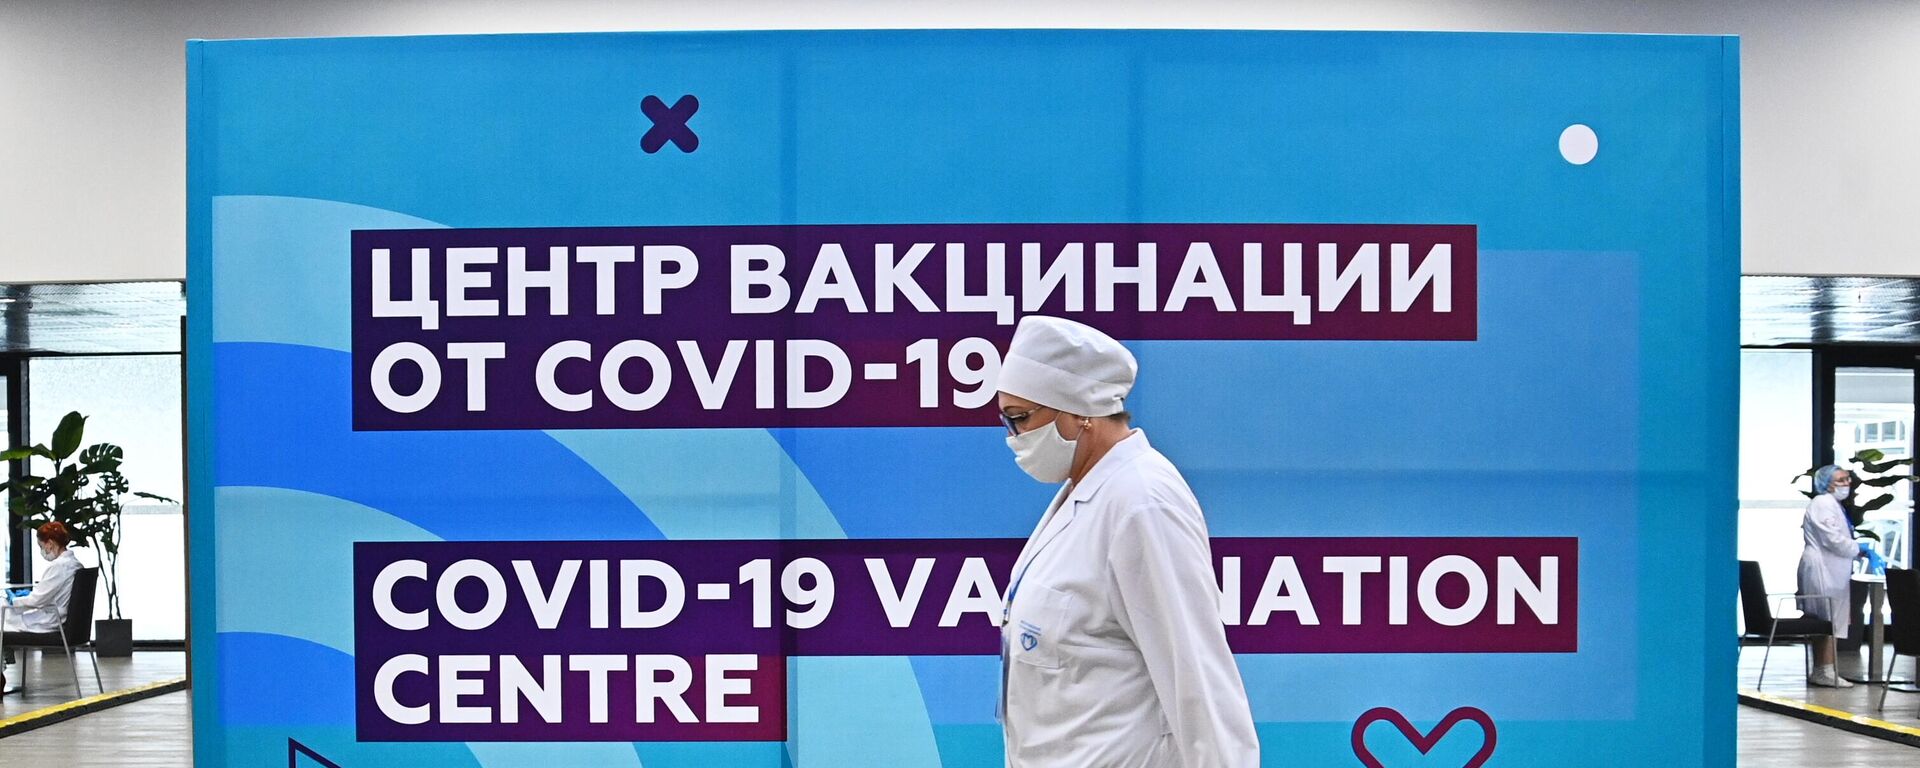 Центр вакцинации от COVID-19 на стадионе Лужники - Sputnik Узбекистан, 1920, 08.07.2021